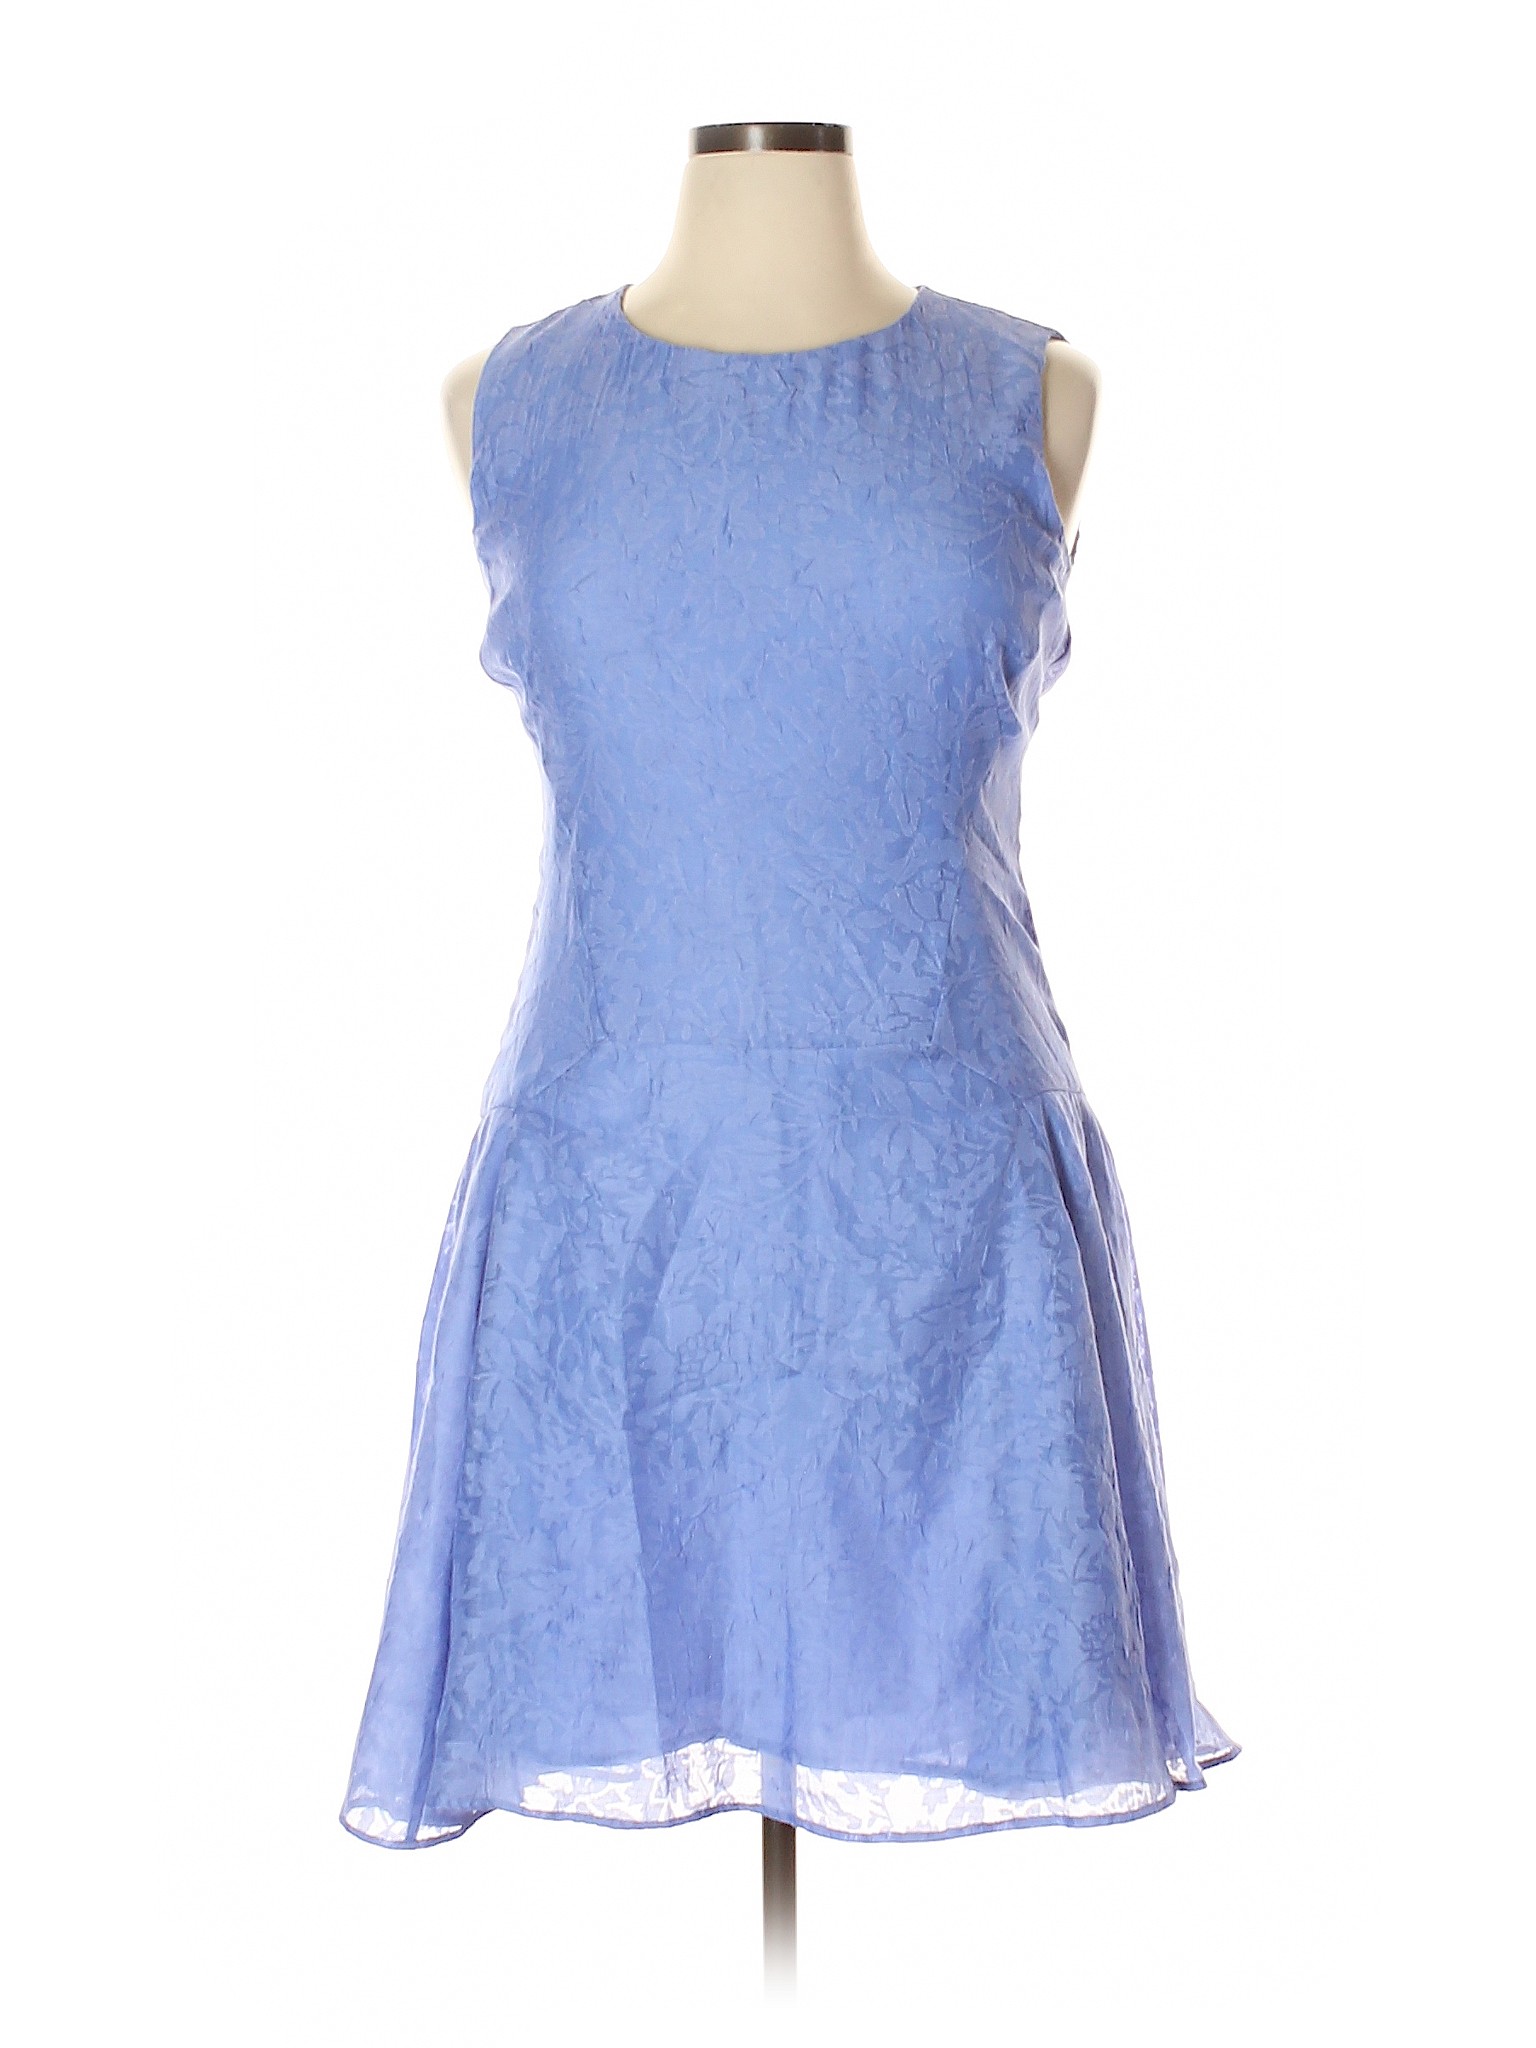 Tommy Hilfiger Women Blue Casual Dress 14 | eBay